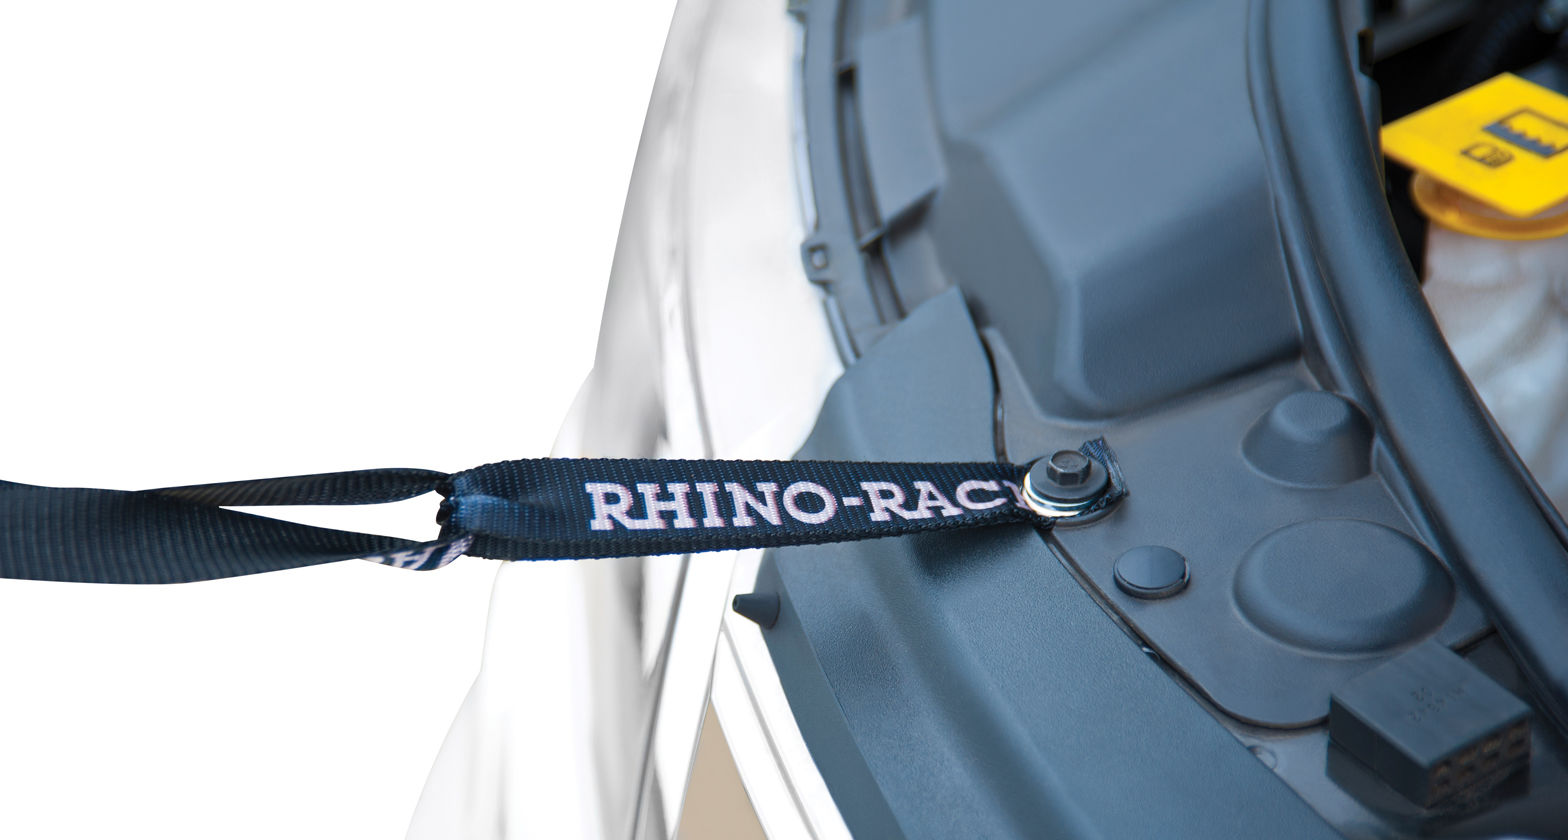 Rhino-Rack RAS - Rhino-Rack Anchor Strap